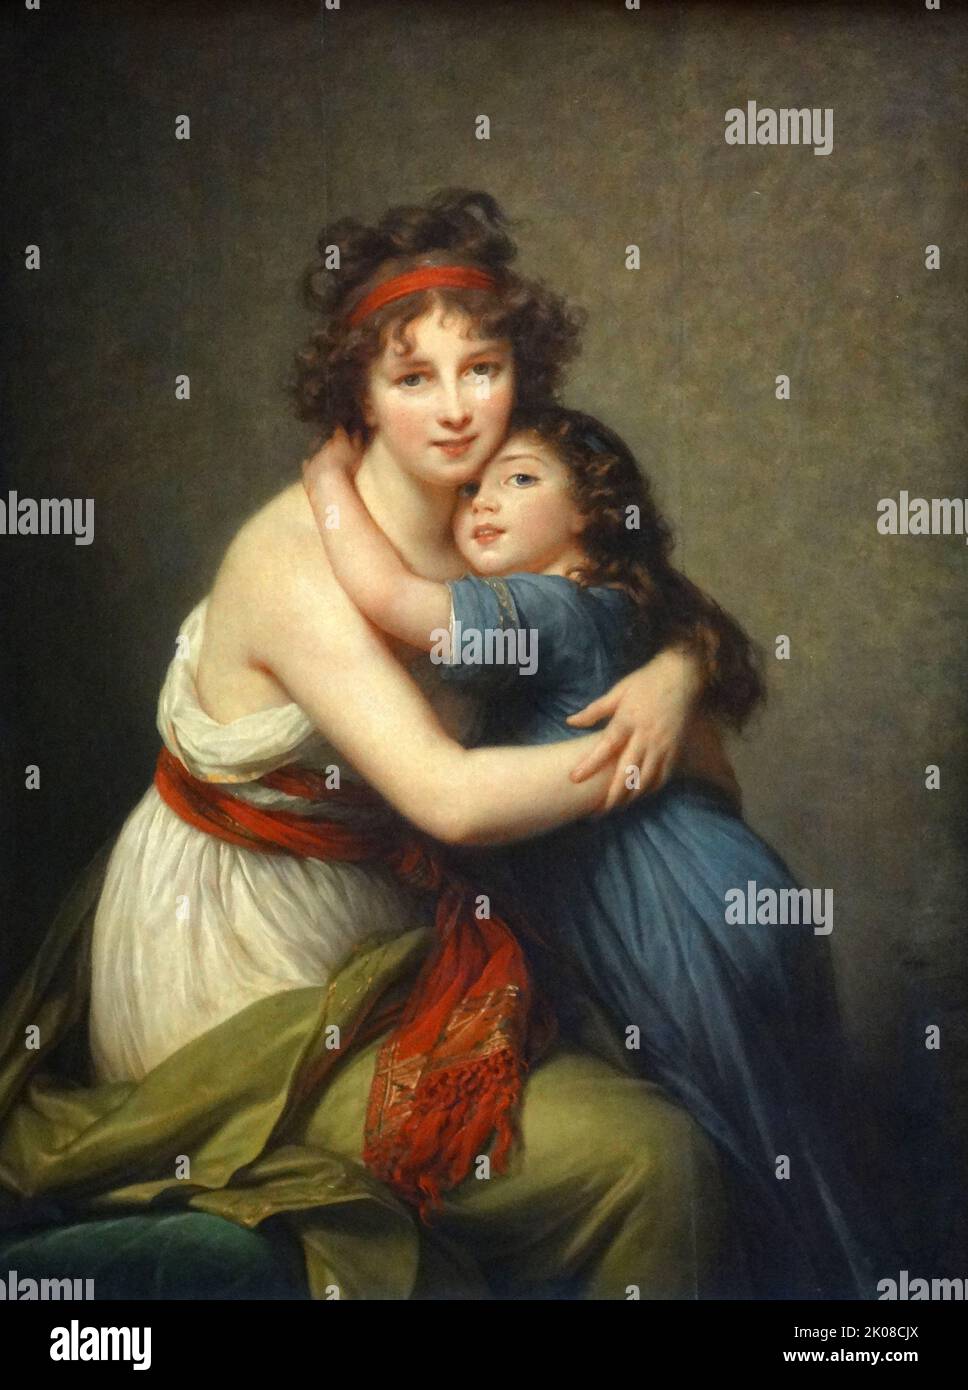 Madame Vigee Le Brun et sa fille, Jeanne-Lucie-Louise, 1789 von Elisabeth Louise Vigee Le Brun (16. April 1755 - 30. März 1842) war eine französische Porträtmalerin, insbesondere von Frauen, Ende des 18.. Und Anfang des 19.. Jahrhunderts Stockfoto